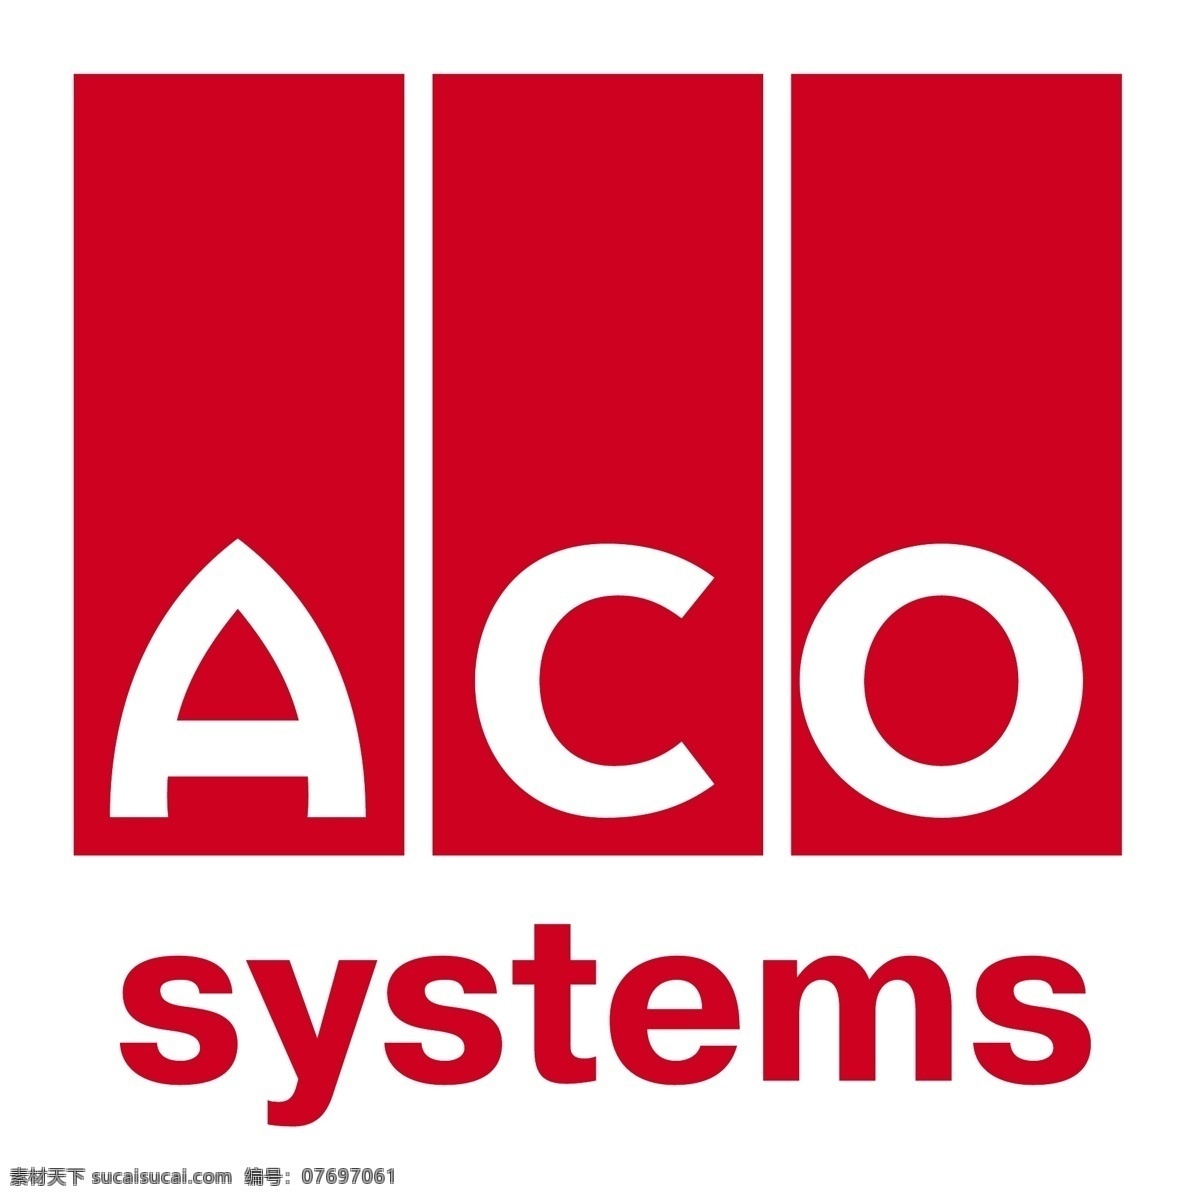 aco 排水 系统 标识系统 系统设计 蚁 群 算法 排水系统 免费系统向量 向量 系统的系统 系统无载体 载体系统 无载体系统 矢量标志系统 矢量图 建筑家居